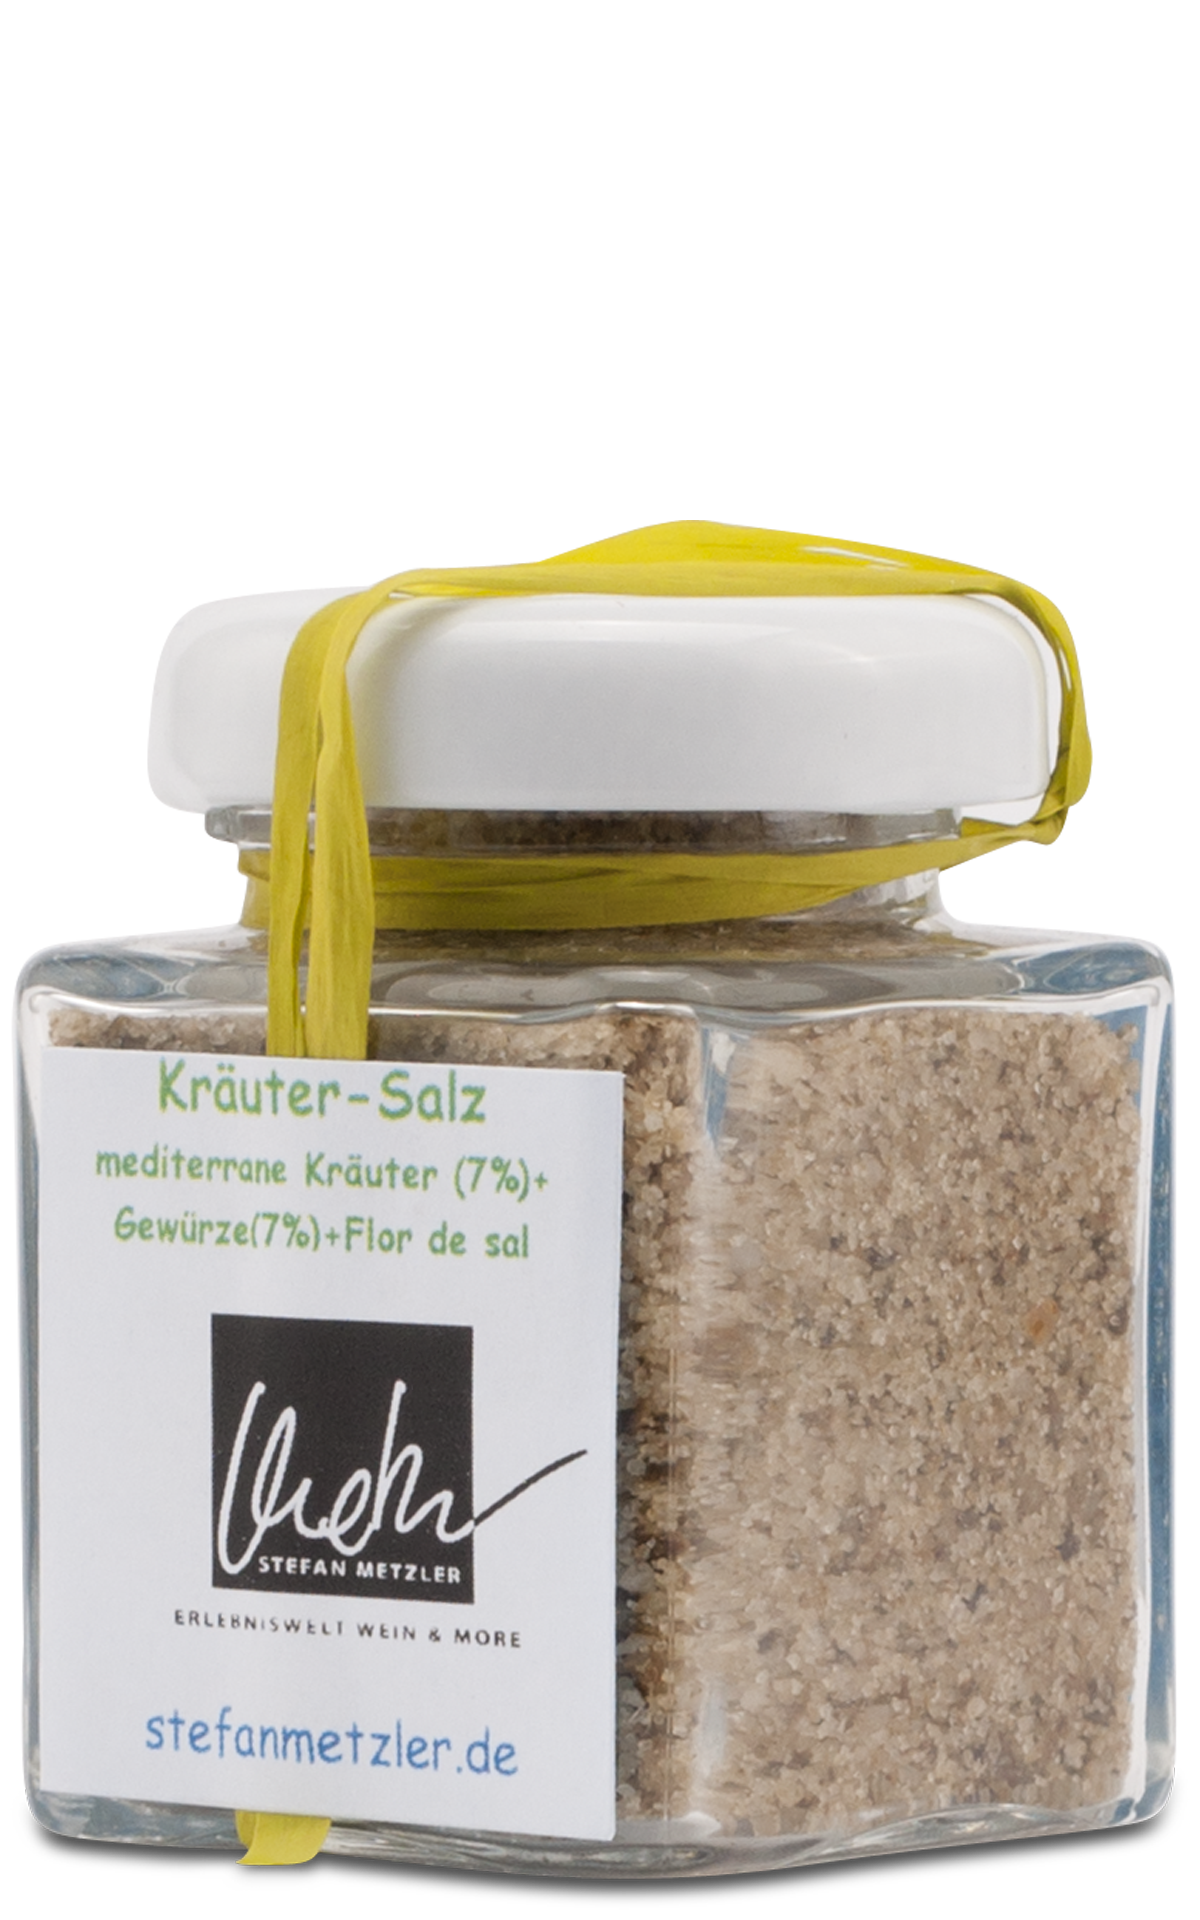 Kräuter-Salz